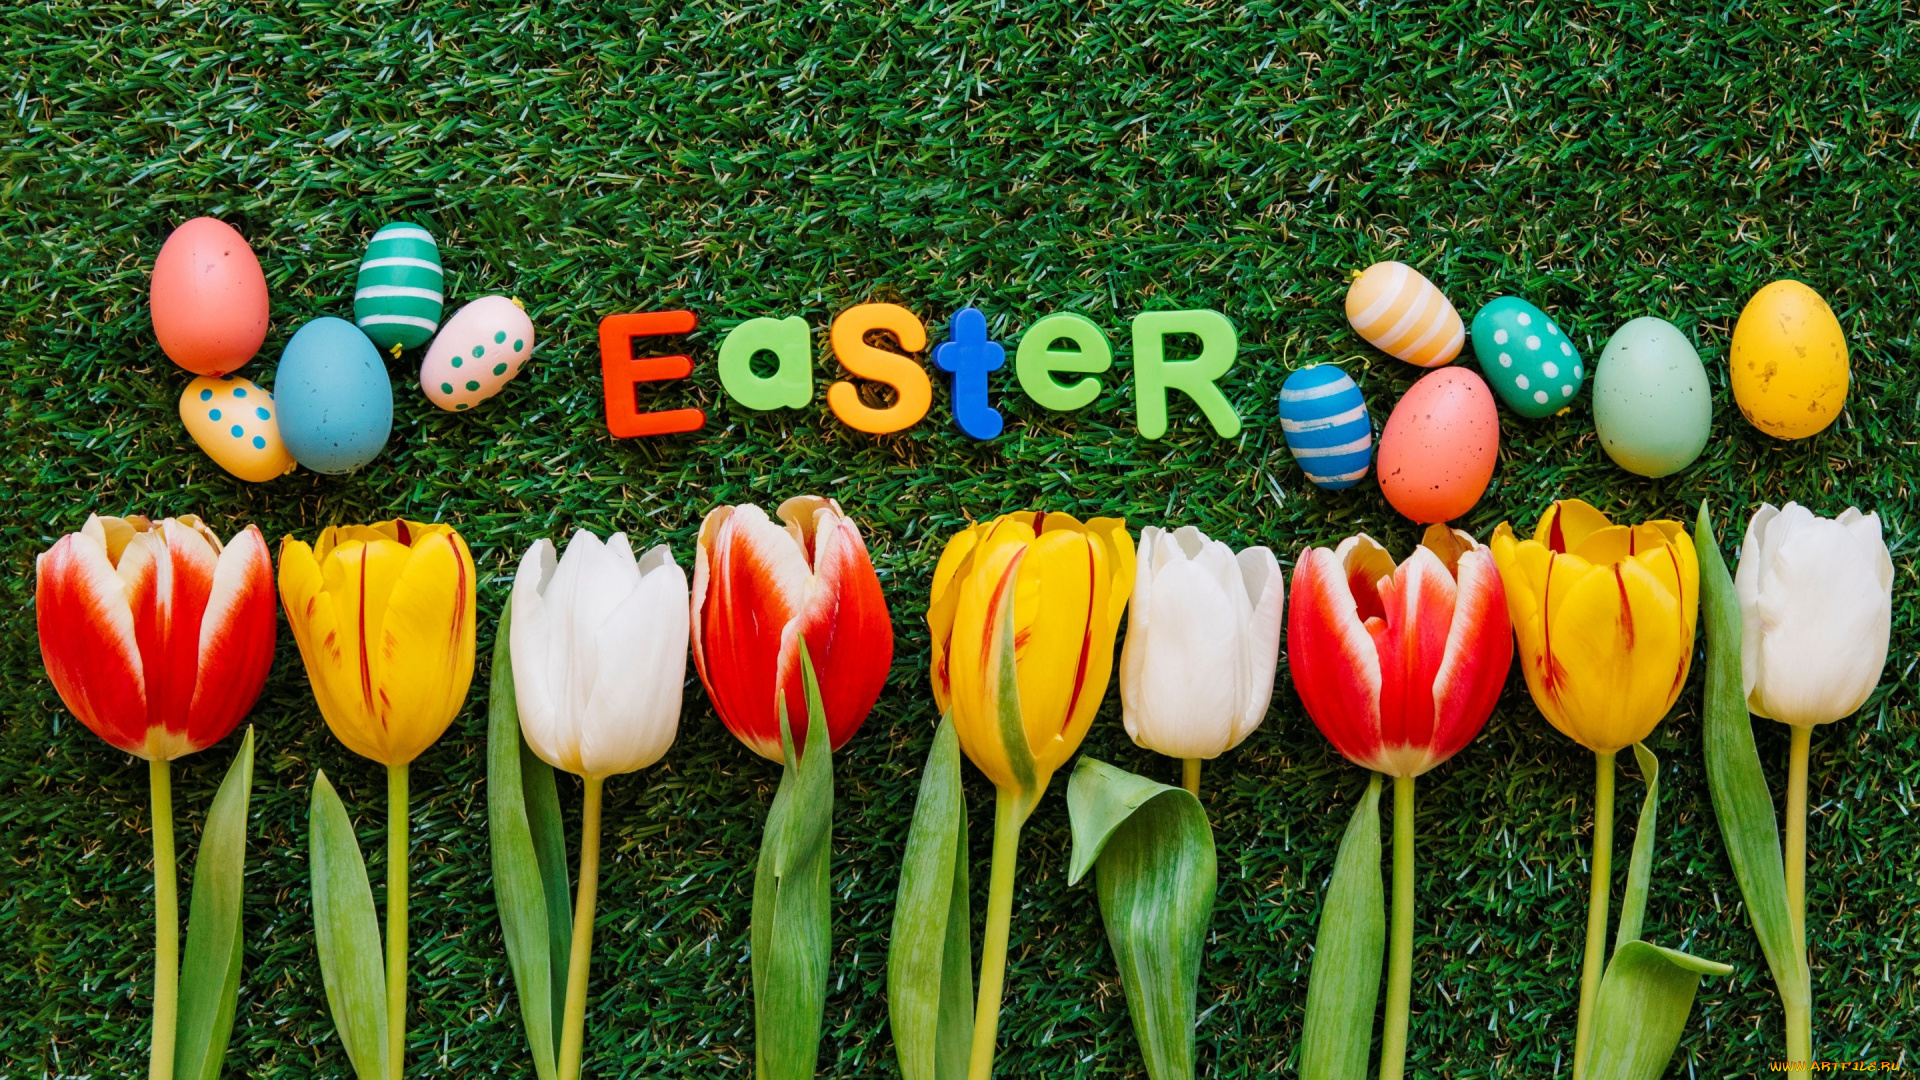 праздничные, пасха, тюльпаны, трава, весна, easter, colorful, decoration, green, grass, цветы, flowers, happy, eggs, яйца, крашеные, spring, tulips